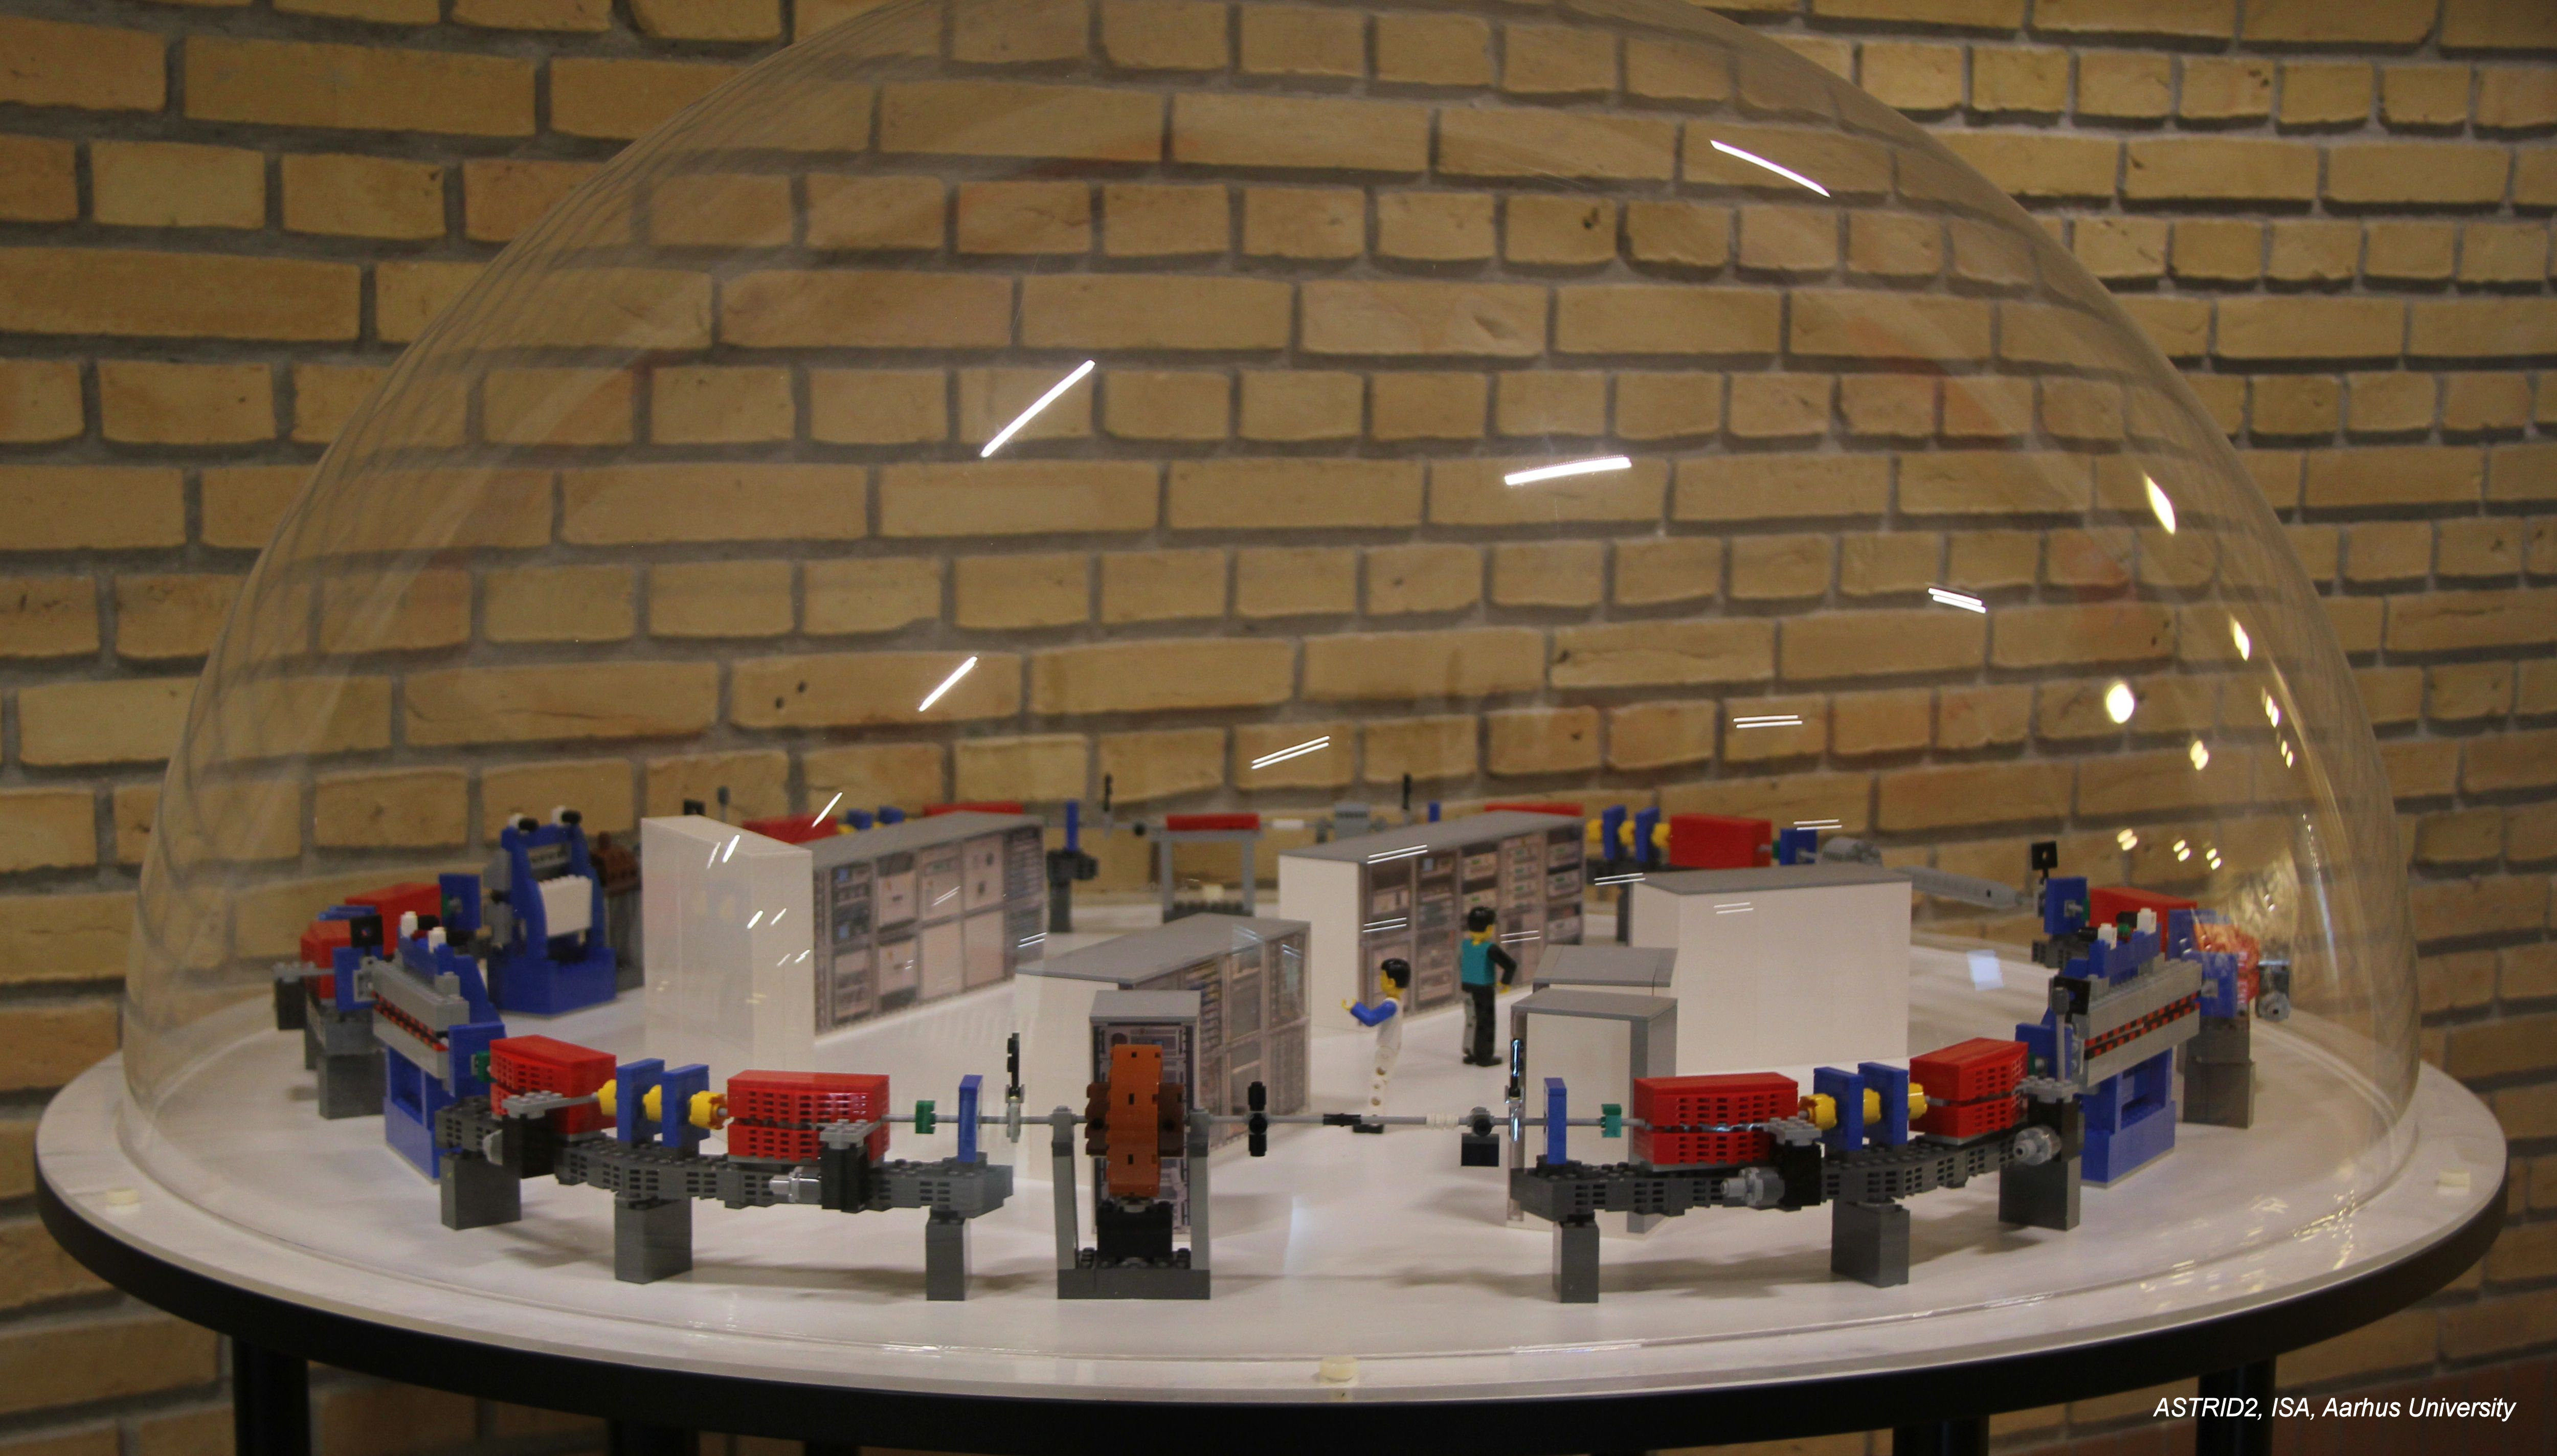 LEGO-model of ASTRID andASTRID2